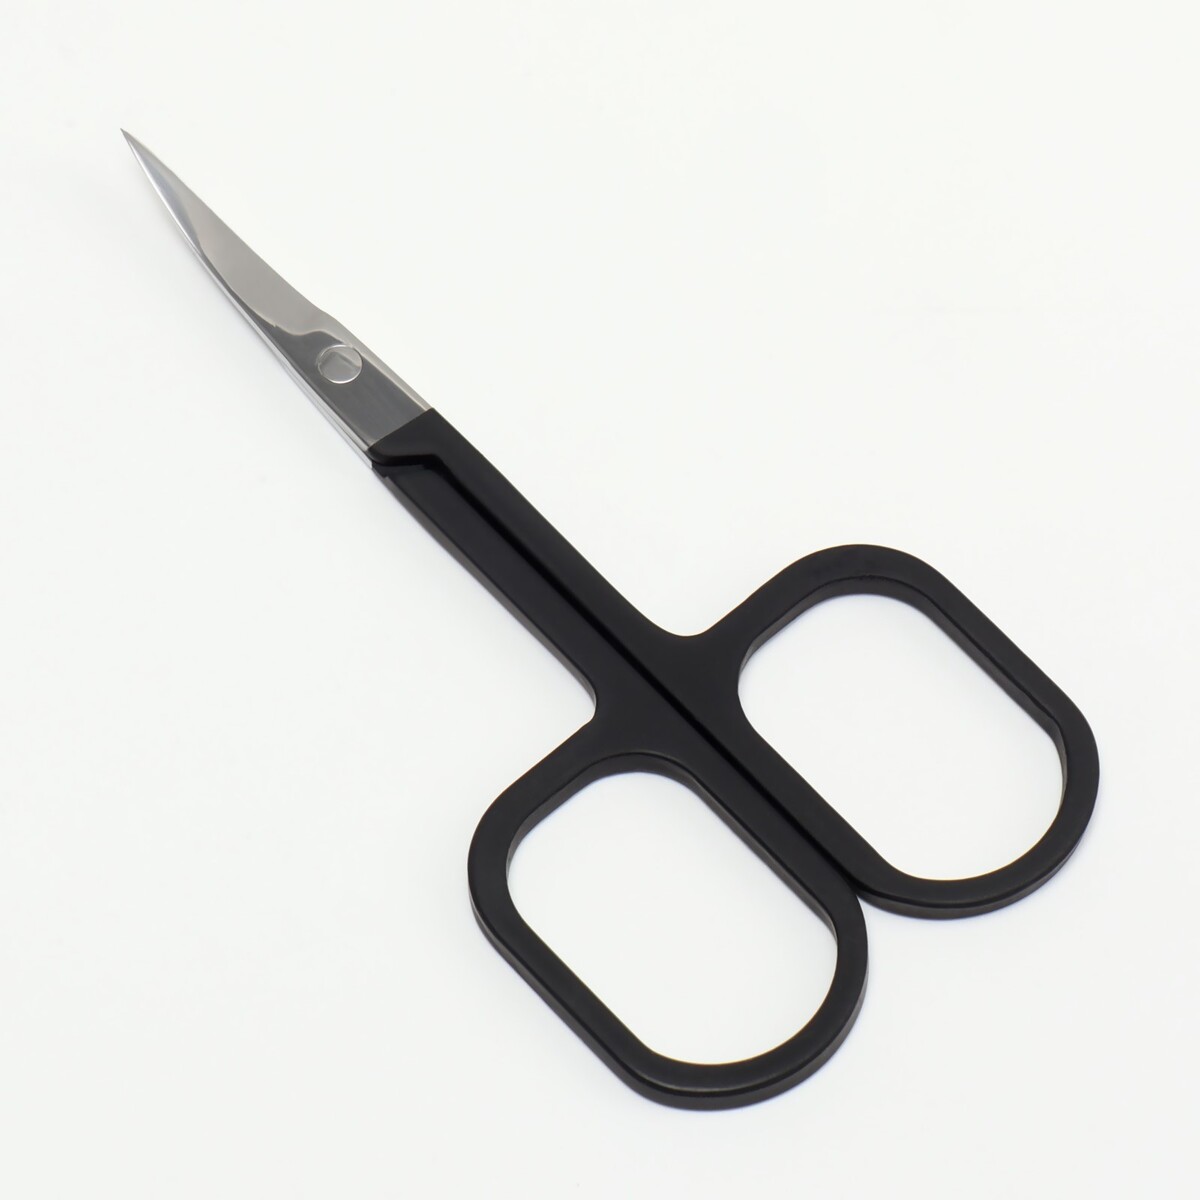 Ножницы маникюрные, узкие, загнутые, с прорезиненными ручками, 9 см, цвет серебристый/черный ножницы маникюрные